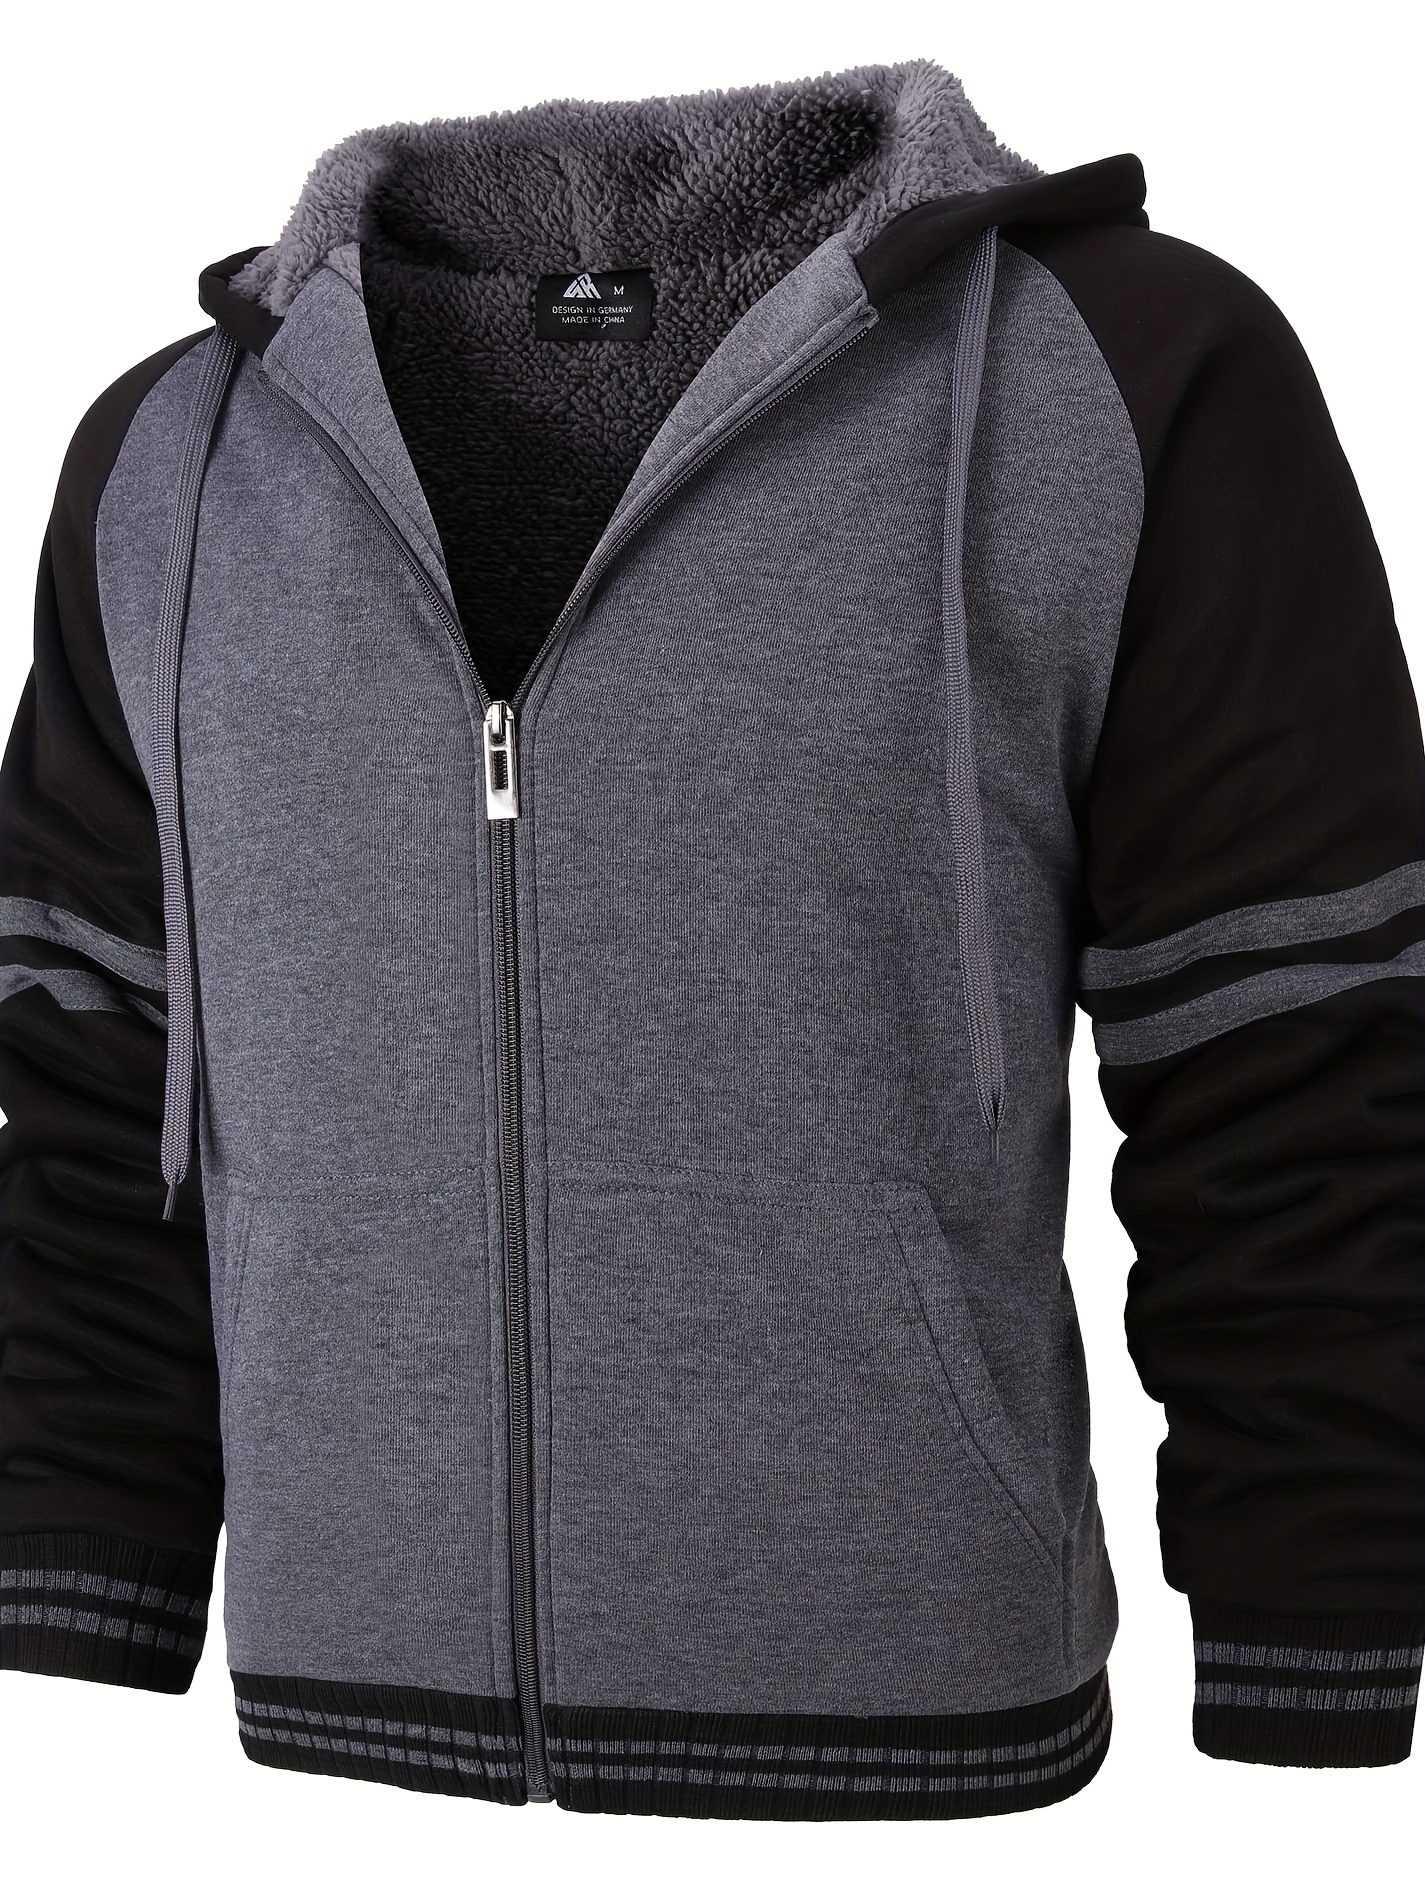 Trendy Color Block Hoodies, Men's Thermal Hooded Jacket Casual